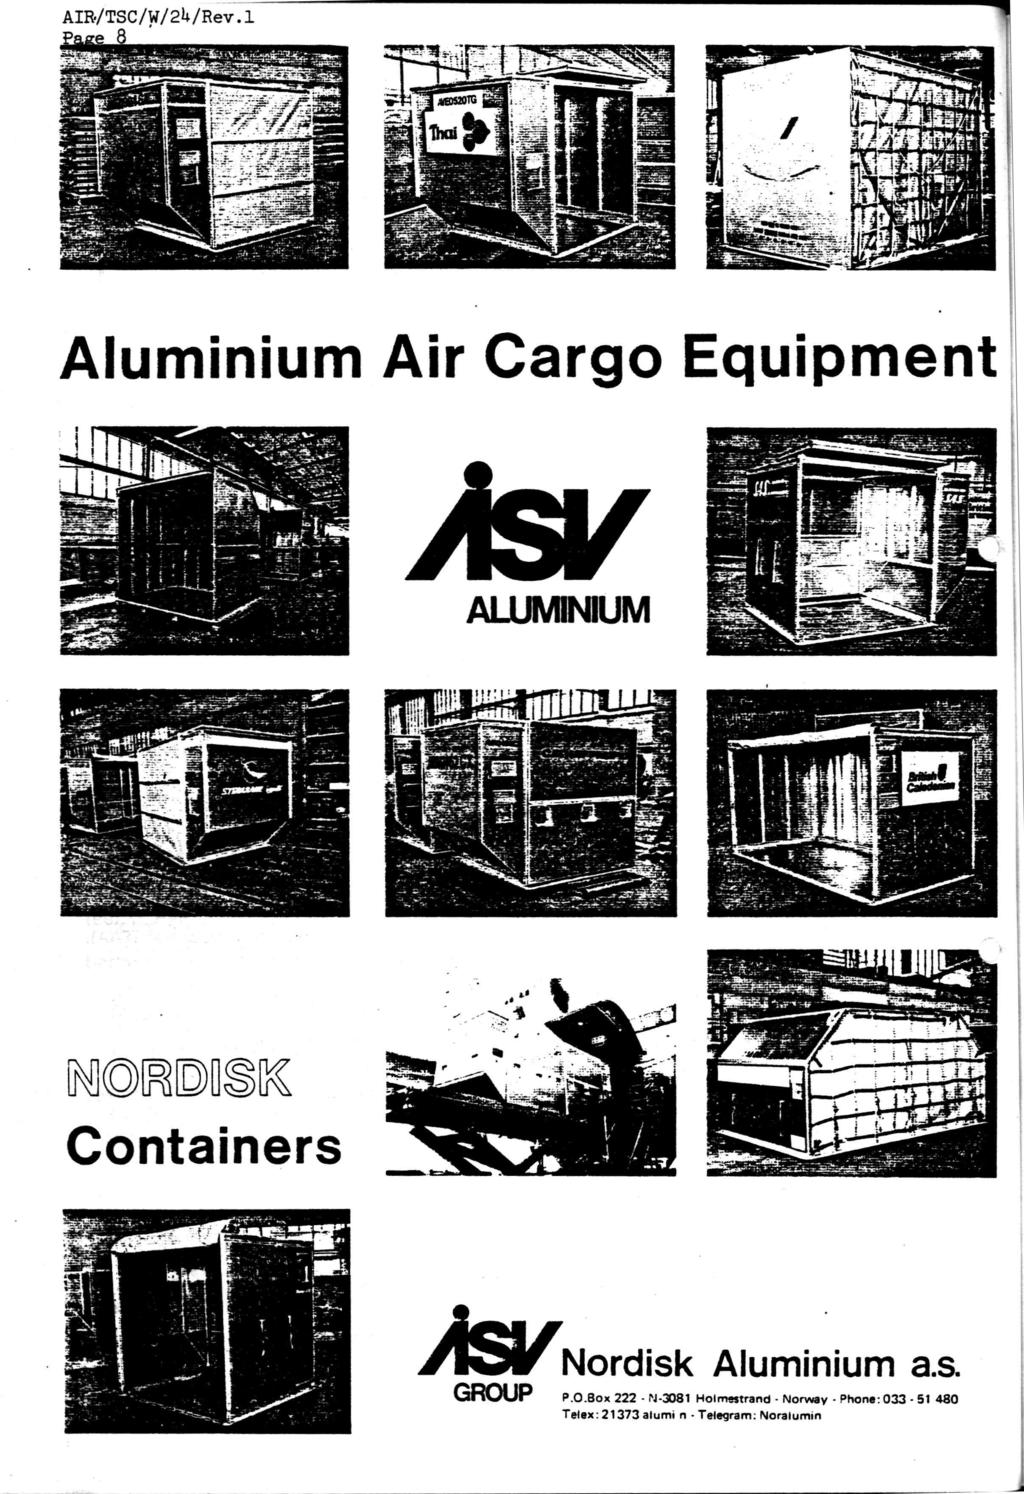 8 Aluminium Air Cargo Equipment As/ ALUMINIUM Pfinir.iîiiLiii 1 J, Jg p2 MHJJUtU "^St^fe'. '^Pi''. J C-._,.